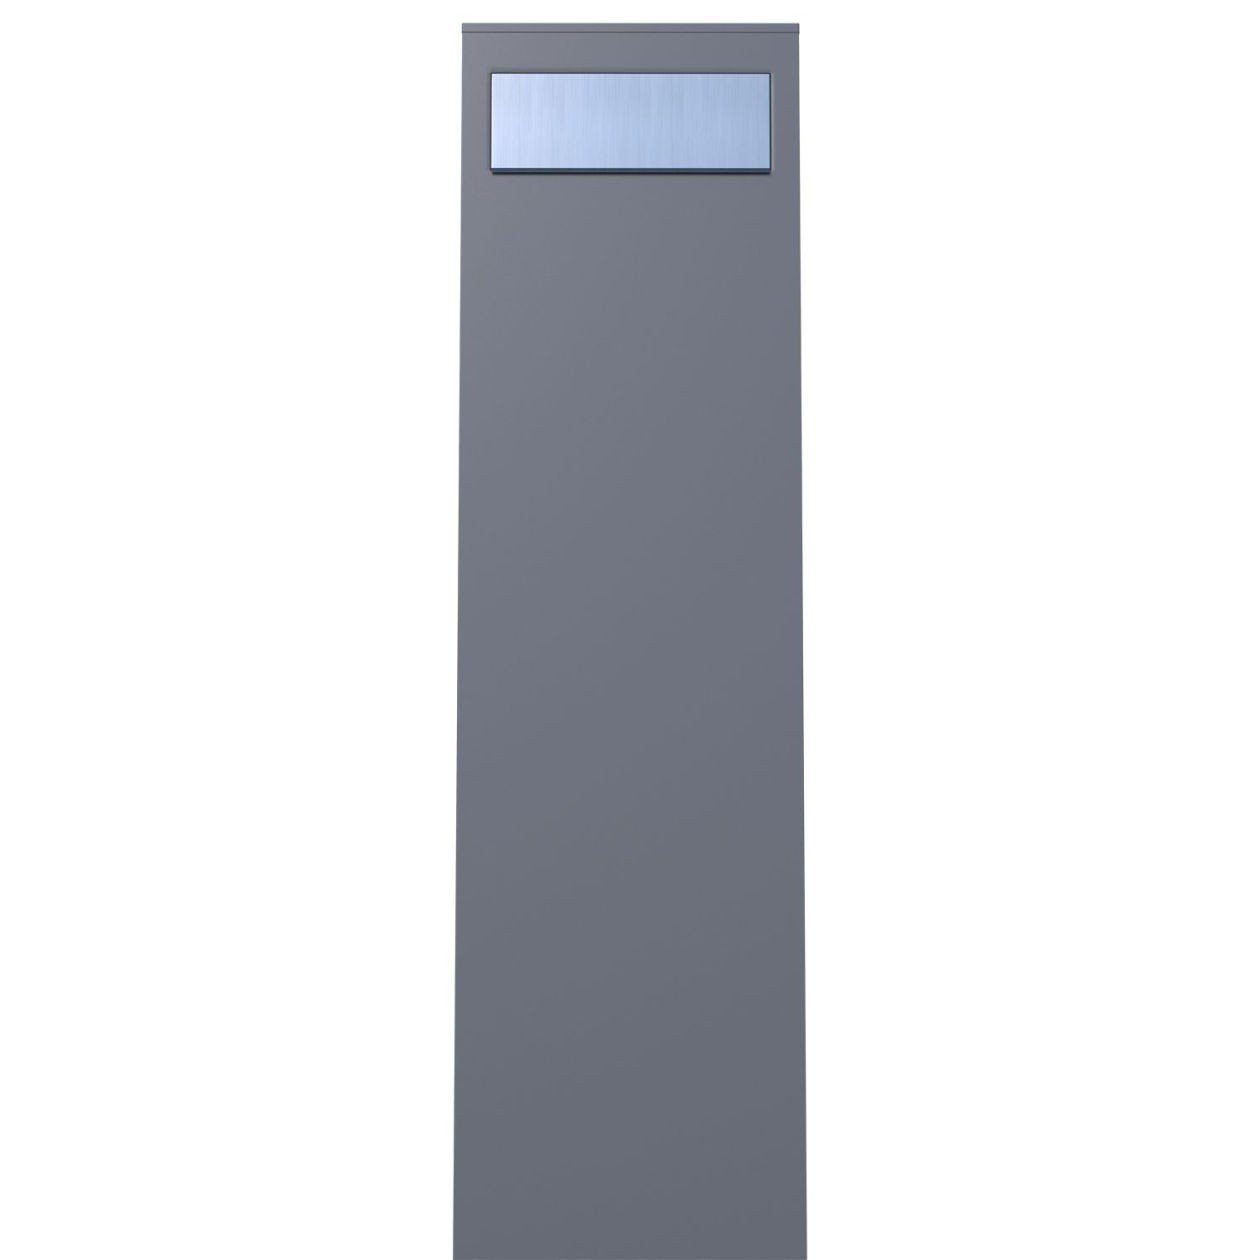 Bravios Briefkasten Standbriefkasten Grau Edels Metallic mit Monolith